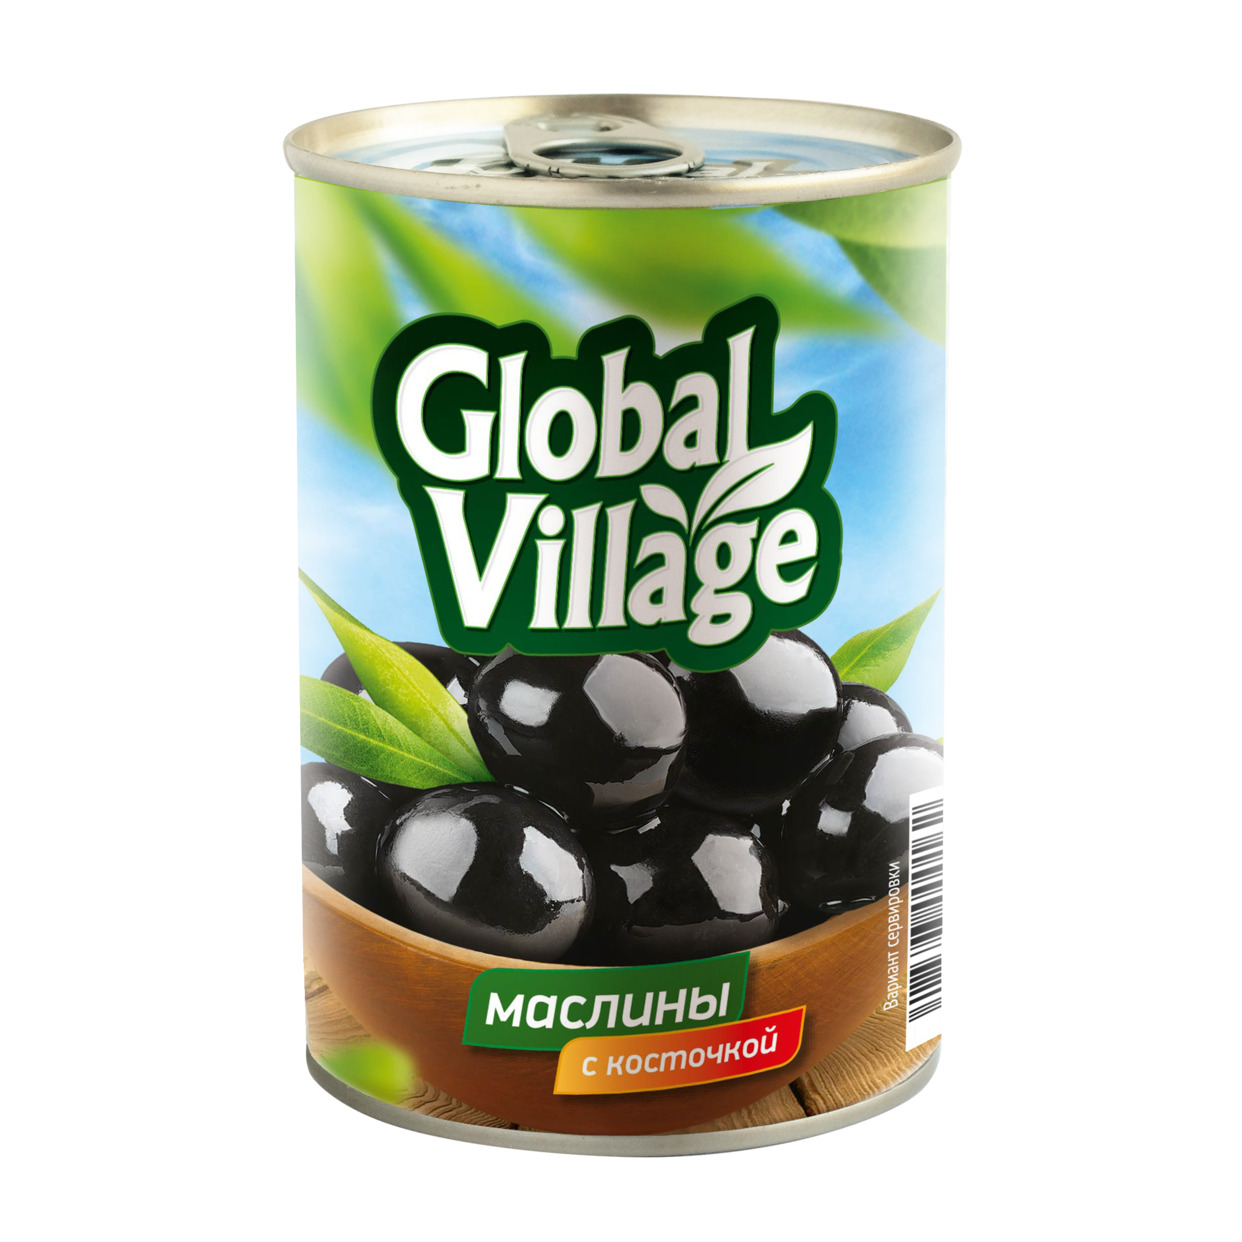 GLOBAL VILLAGE Маслины с/к 425г по акции в Пятерочке